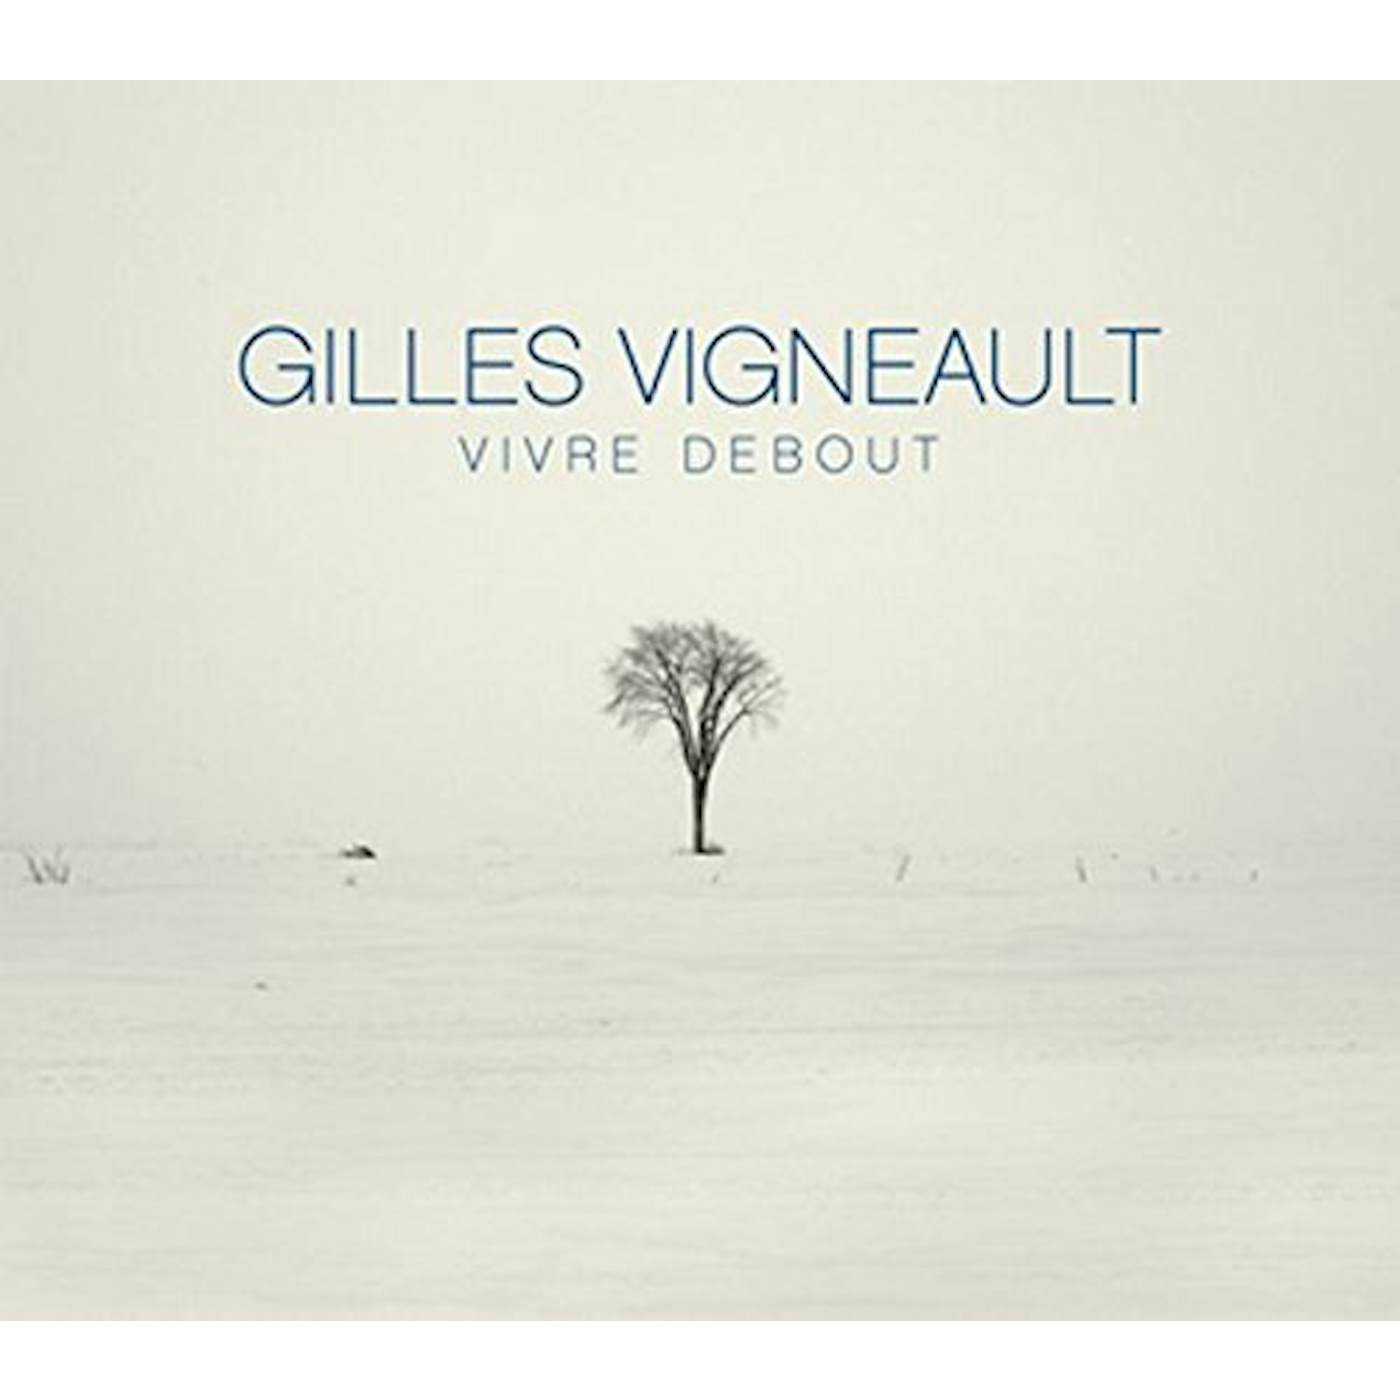 Gilles Vigneault Vivre debout Vinyl Record